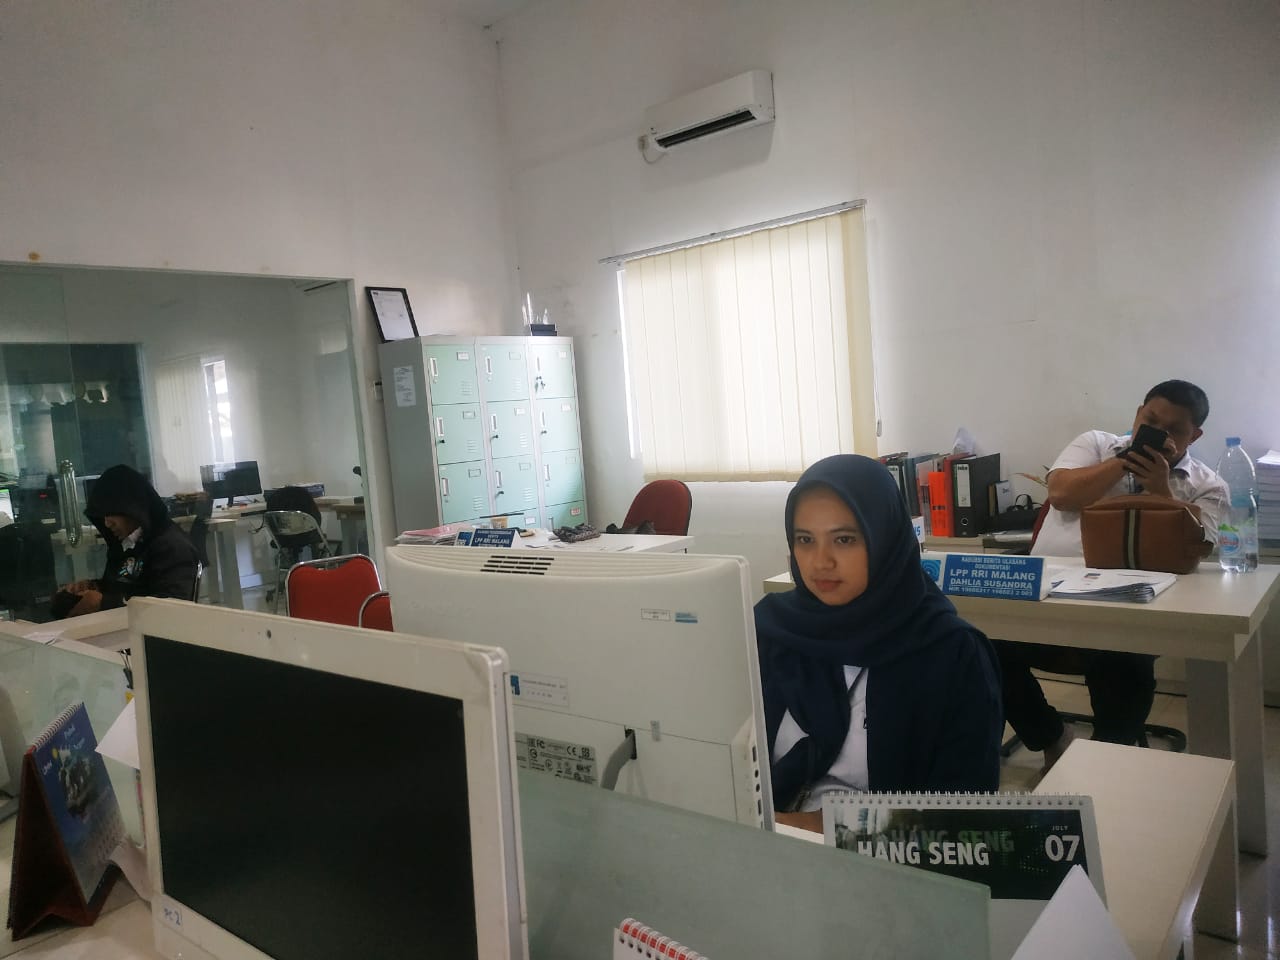 Hanum Oktavia Rosyidah, wartawan sekaligus ibu rumah tangga saat dijumpai di kantor RRI Malang.